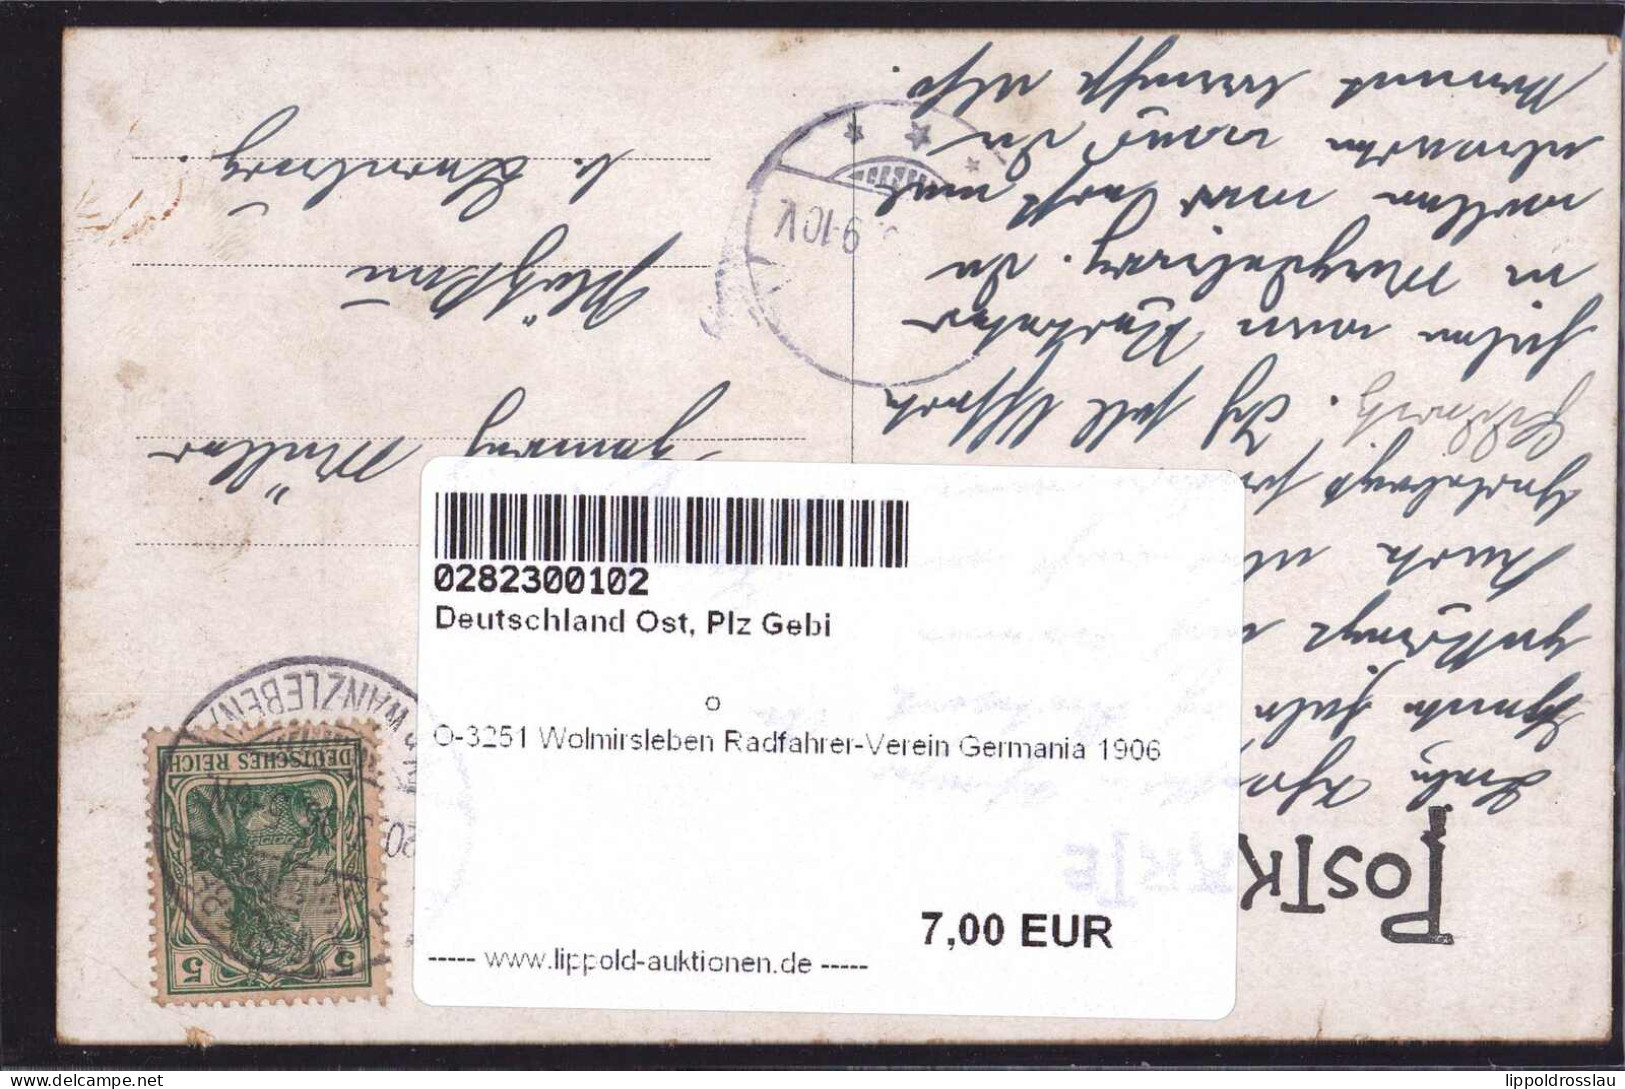 Gest. O-3251 Wolmirsleben Radfahrer-Verein Germania 1906 - Stassfurt